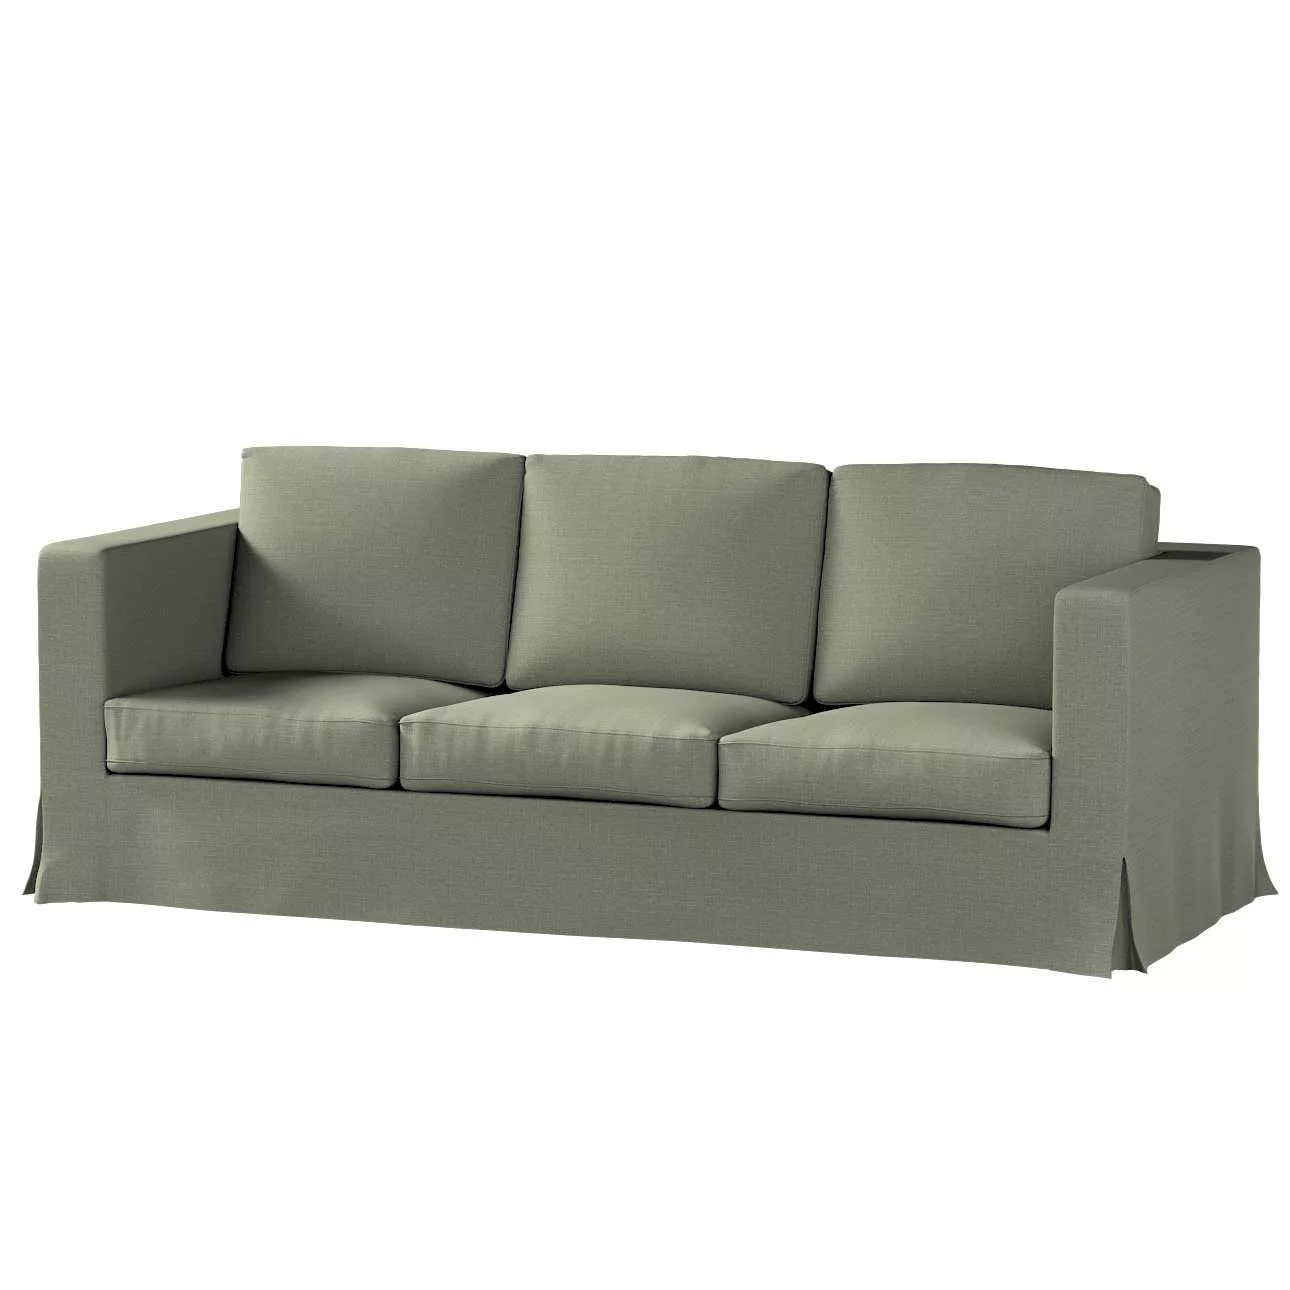 Bezug für Karlanda 3-Sitzer Sofa nicht ausklappbar, lang, khaki, Bezug für günstig online kaufen